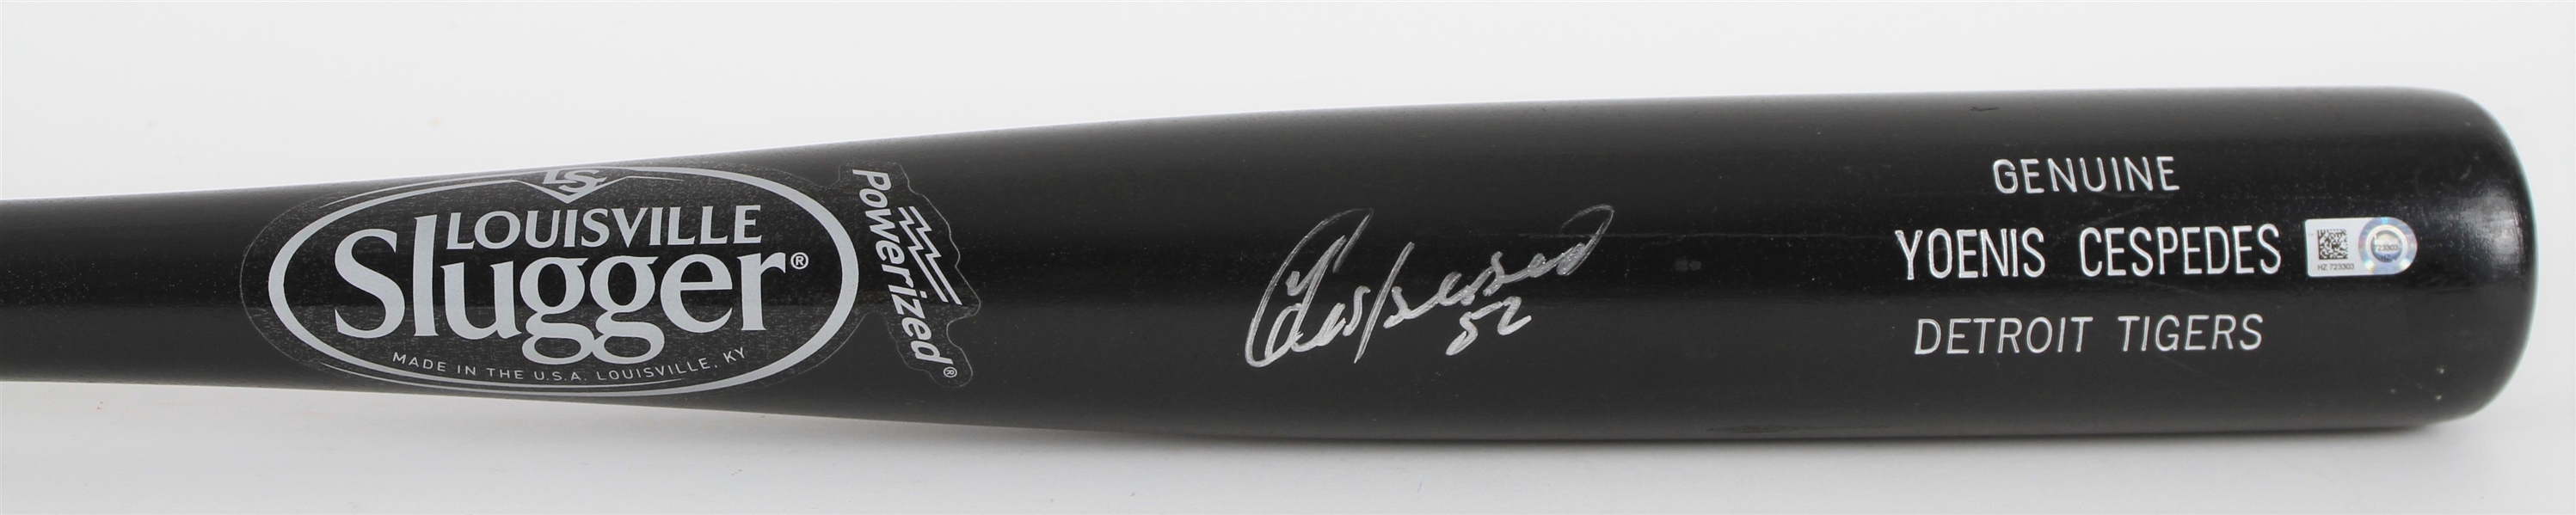 2015 Yoenis Cespedes Detroit Tigers Signed Louisville Slugger Bat (JSA/MLB Hologram)